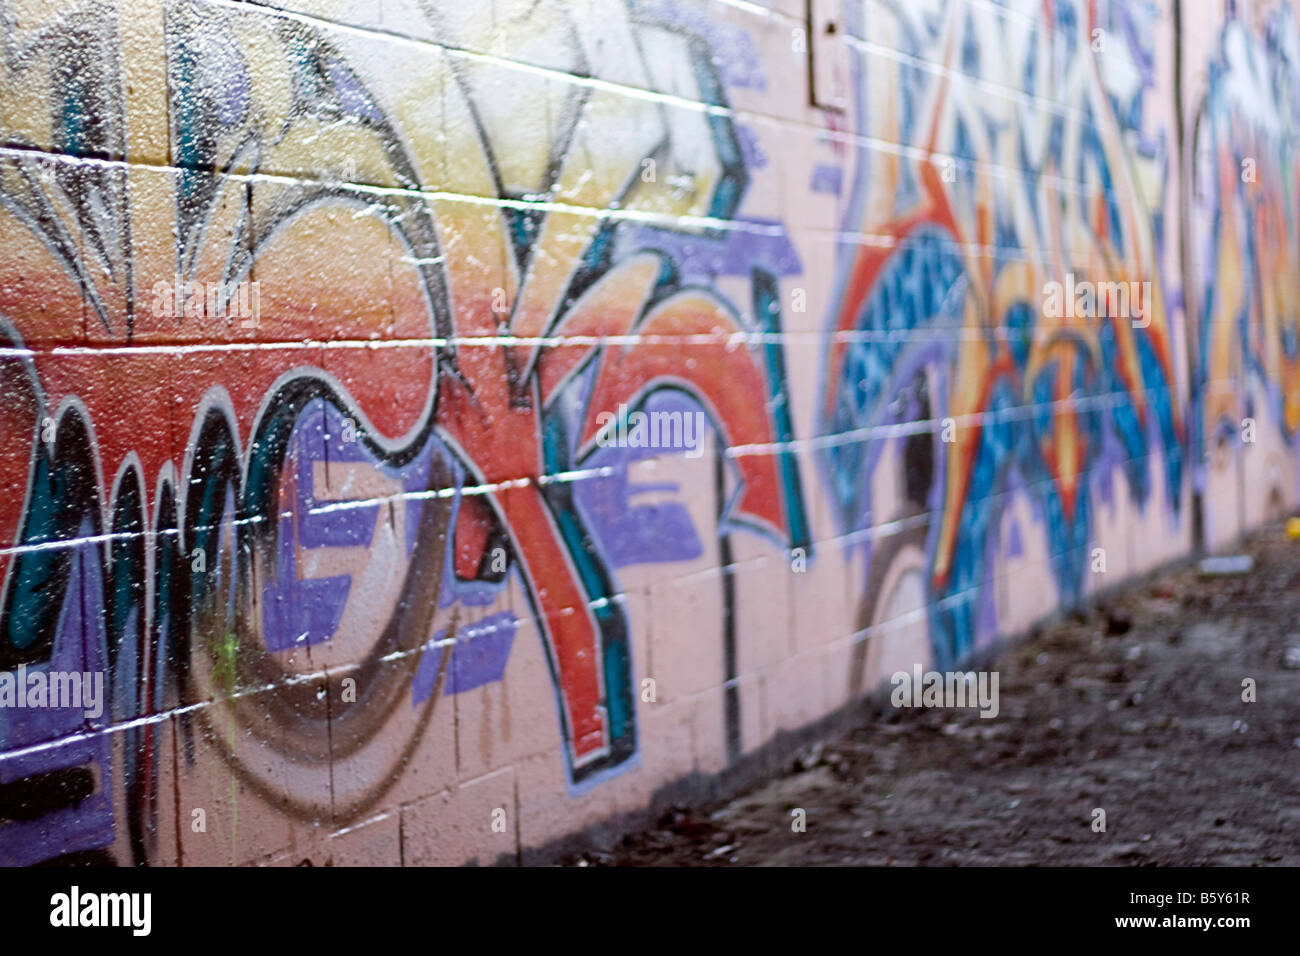 Colorido graffiti pintado con spray en una pared de ladrillo hace un excelente telón de fondo o profundidad de campo Foto de stock